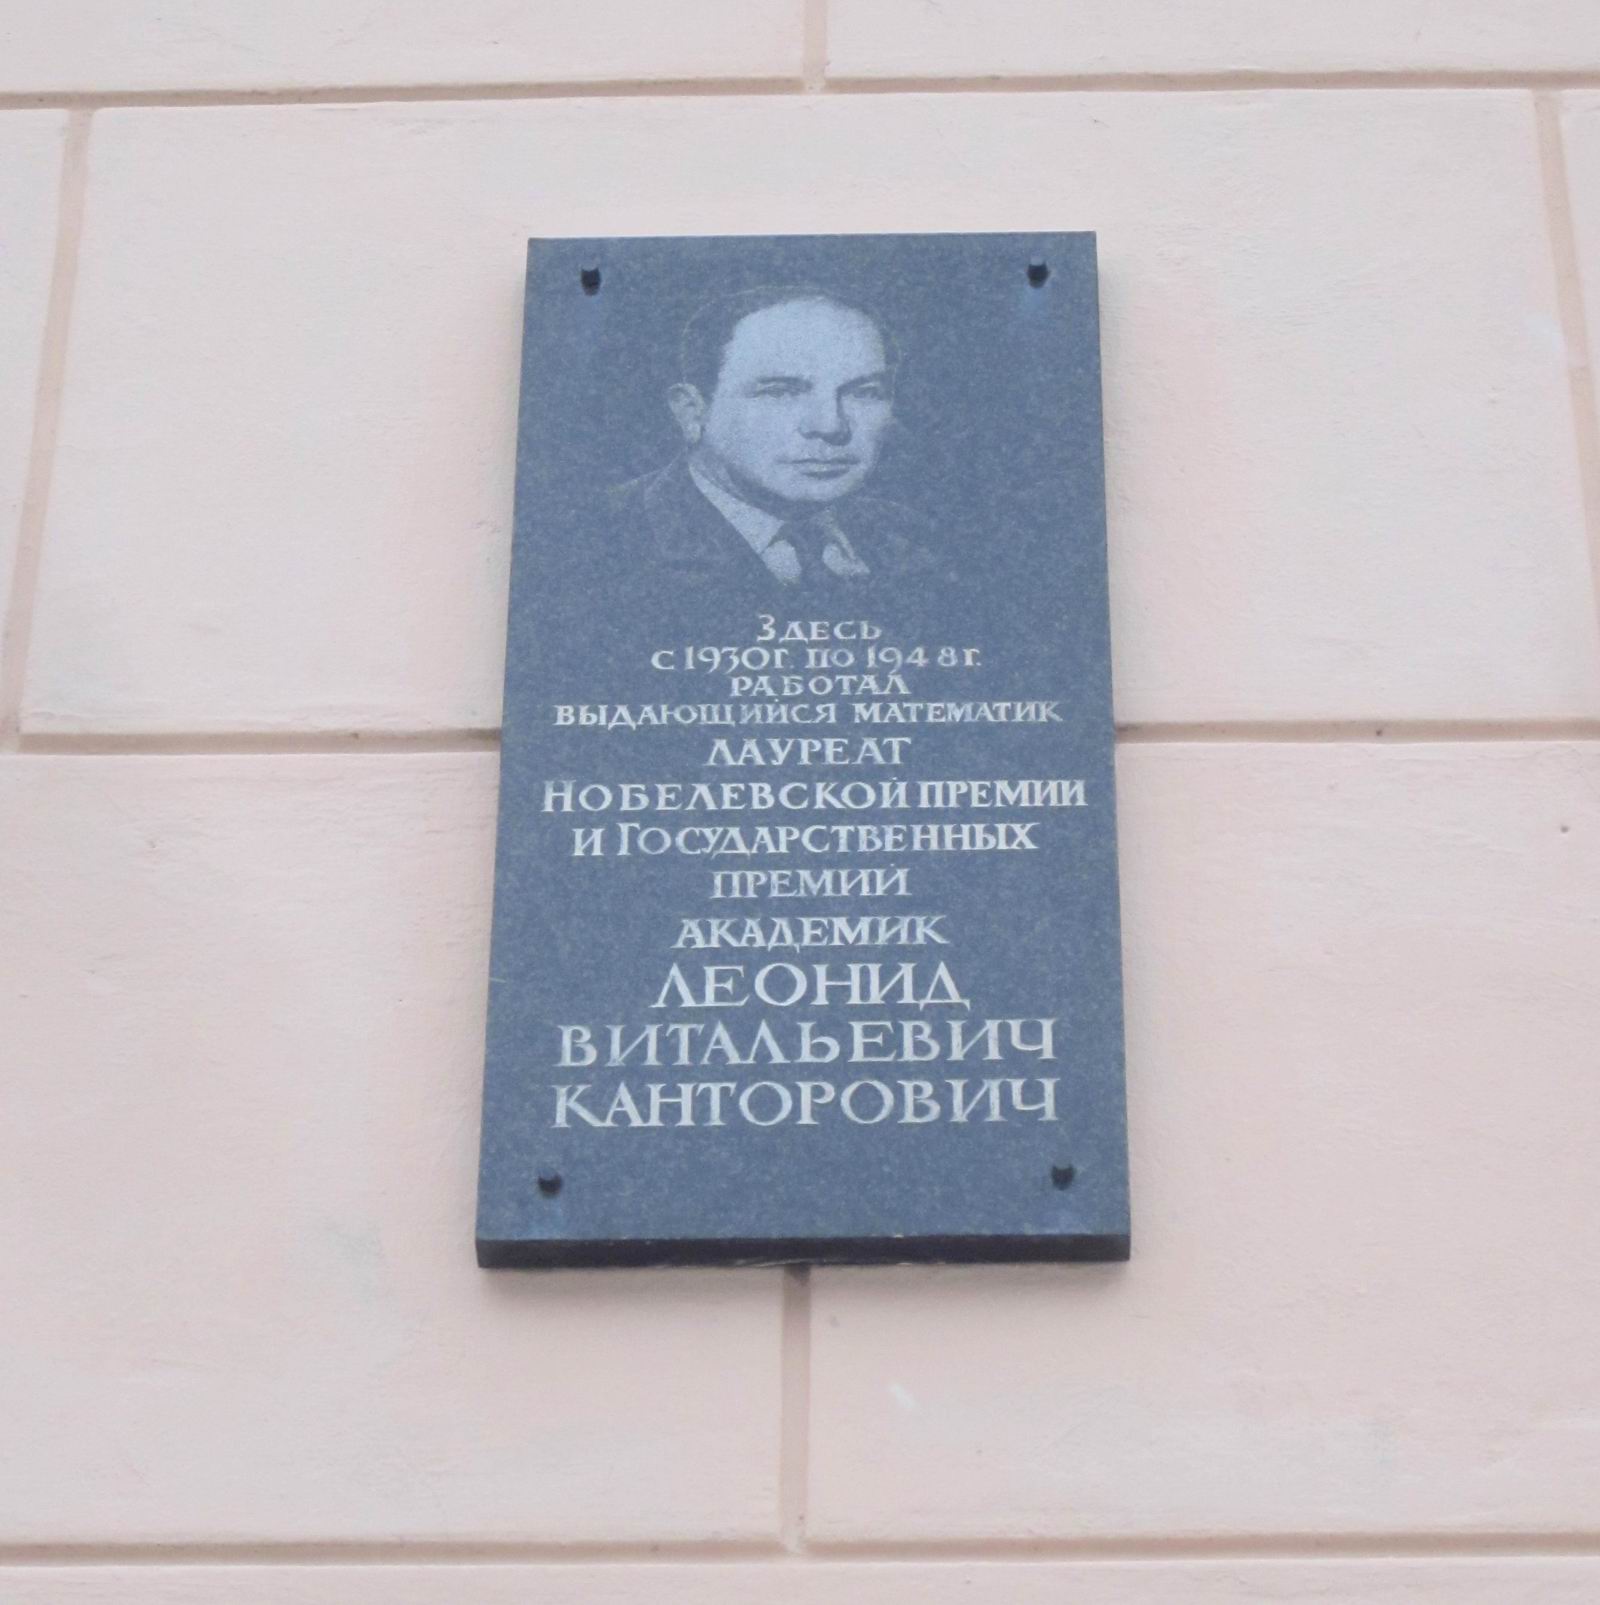 Мемориальная доска Канторовичу Л.В. (1912-1986), в Санкт-Петербурге на Захарьевской улице, дом 22.